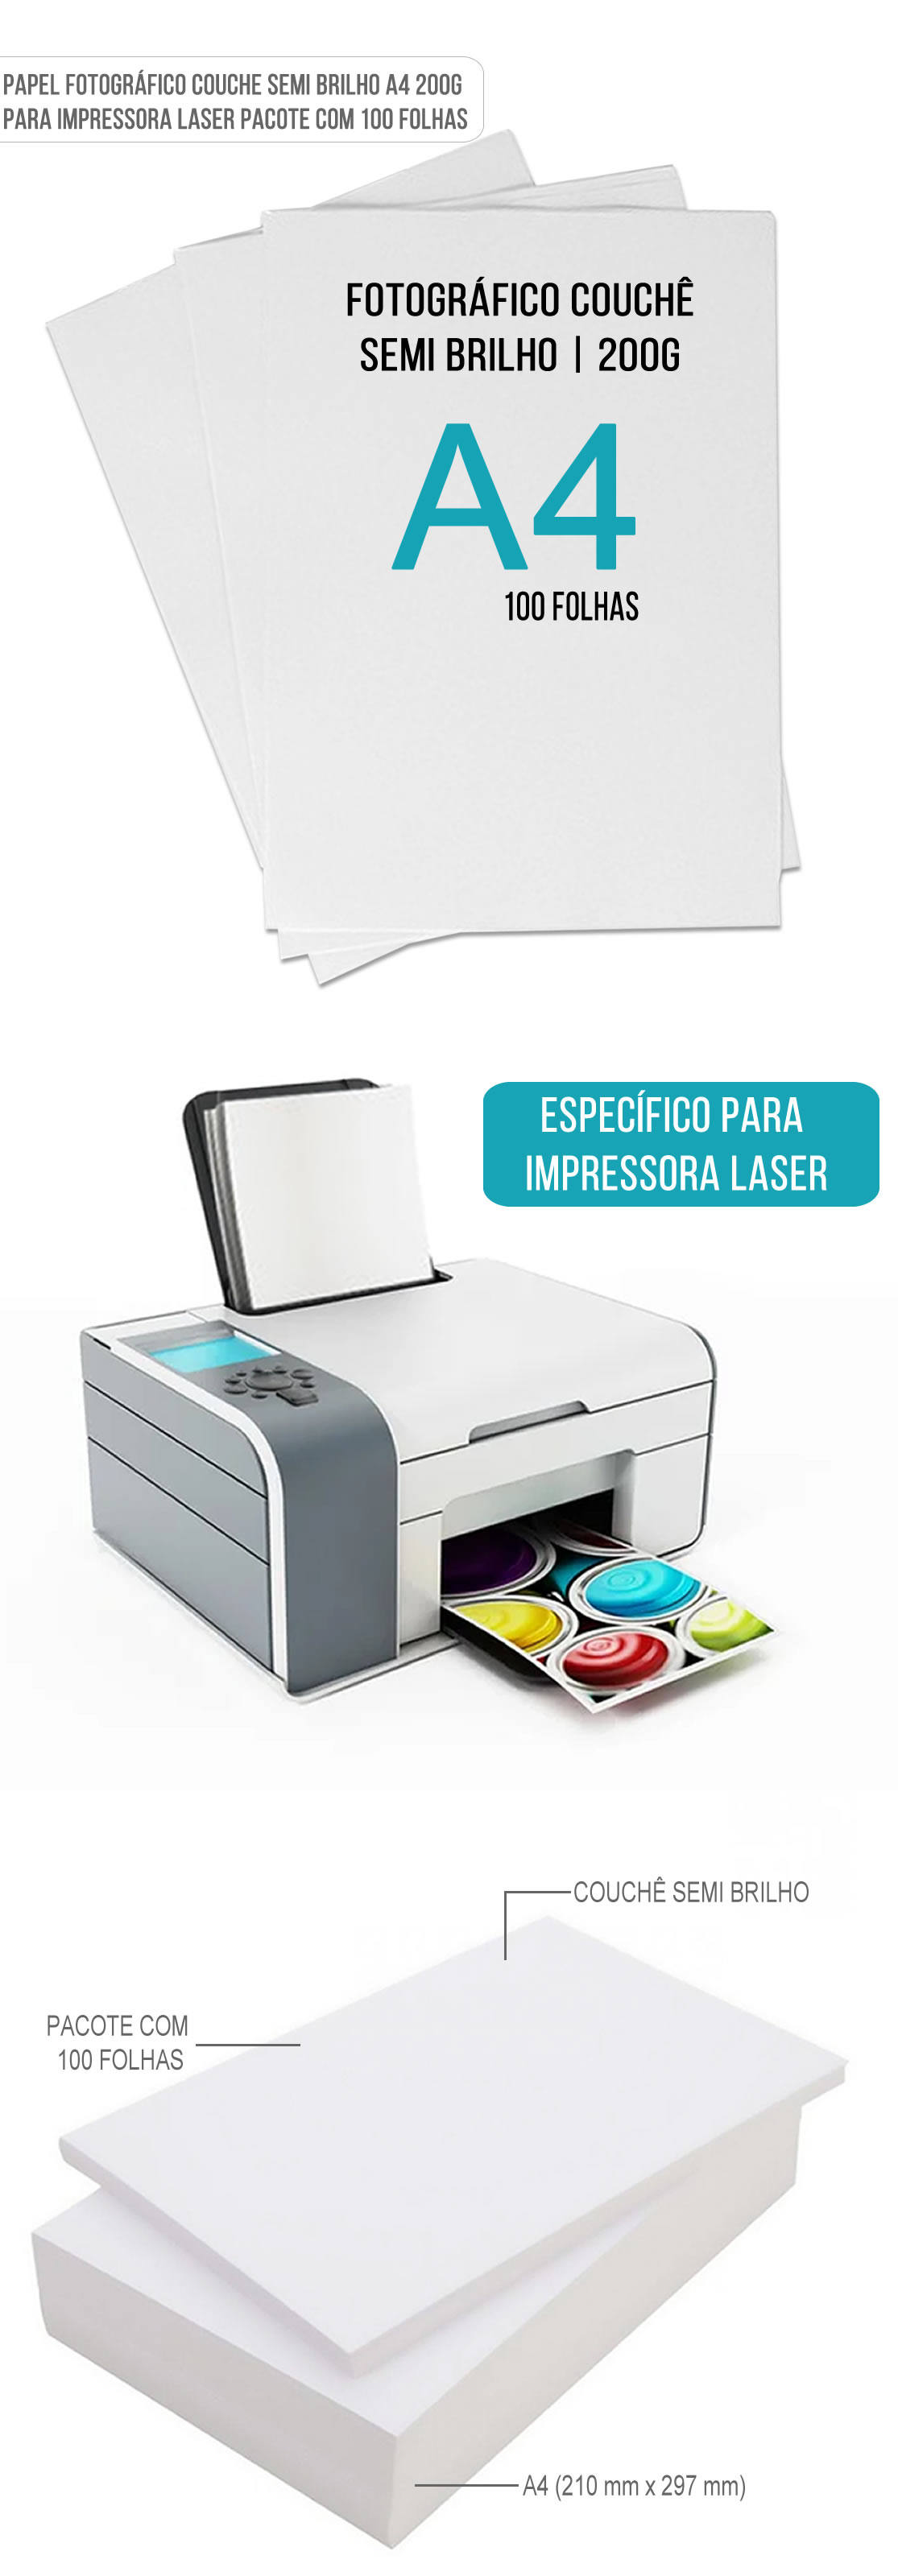 Papel Fotogrfico Couche Semi Brilho A4 200g Especfico para Impressora Laser com 100 Folhas